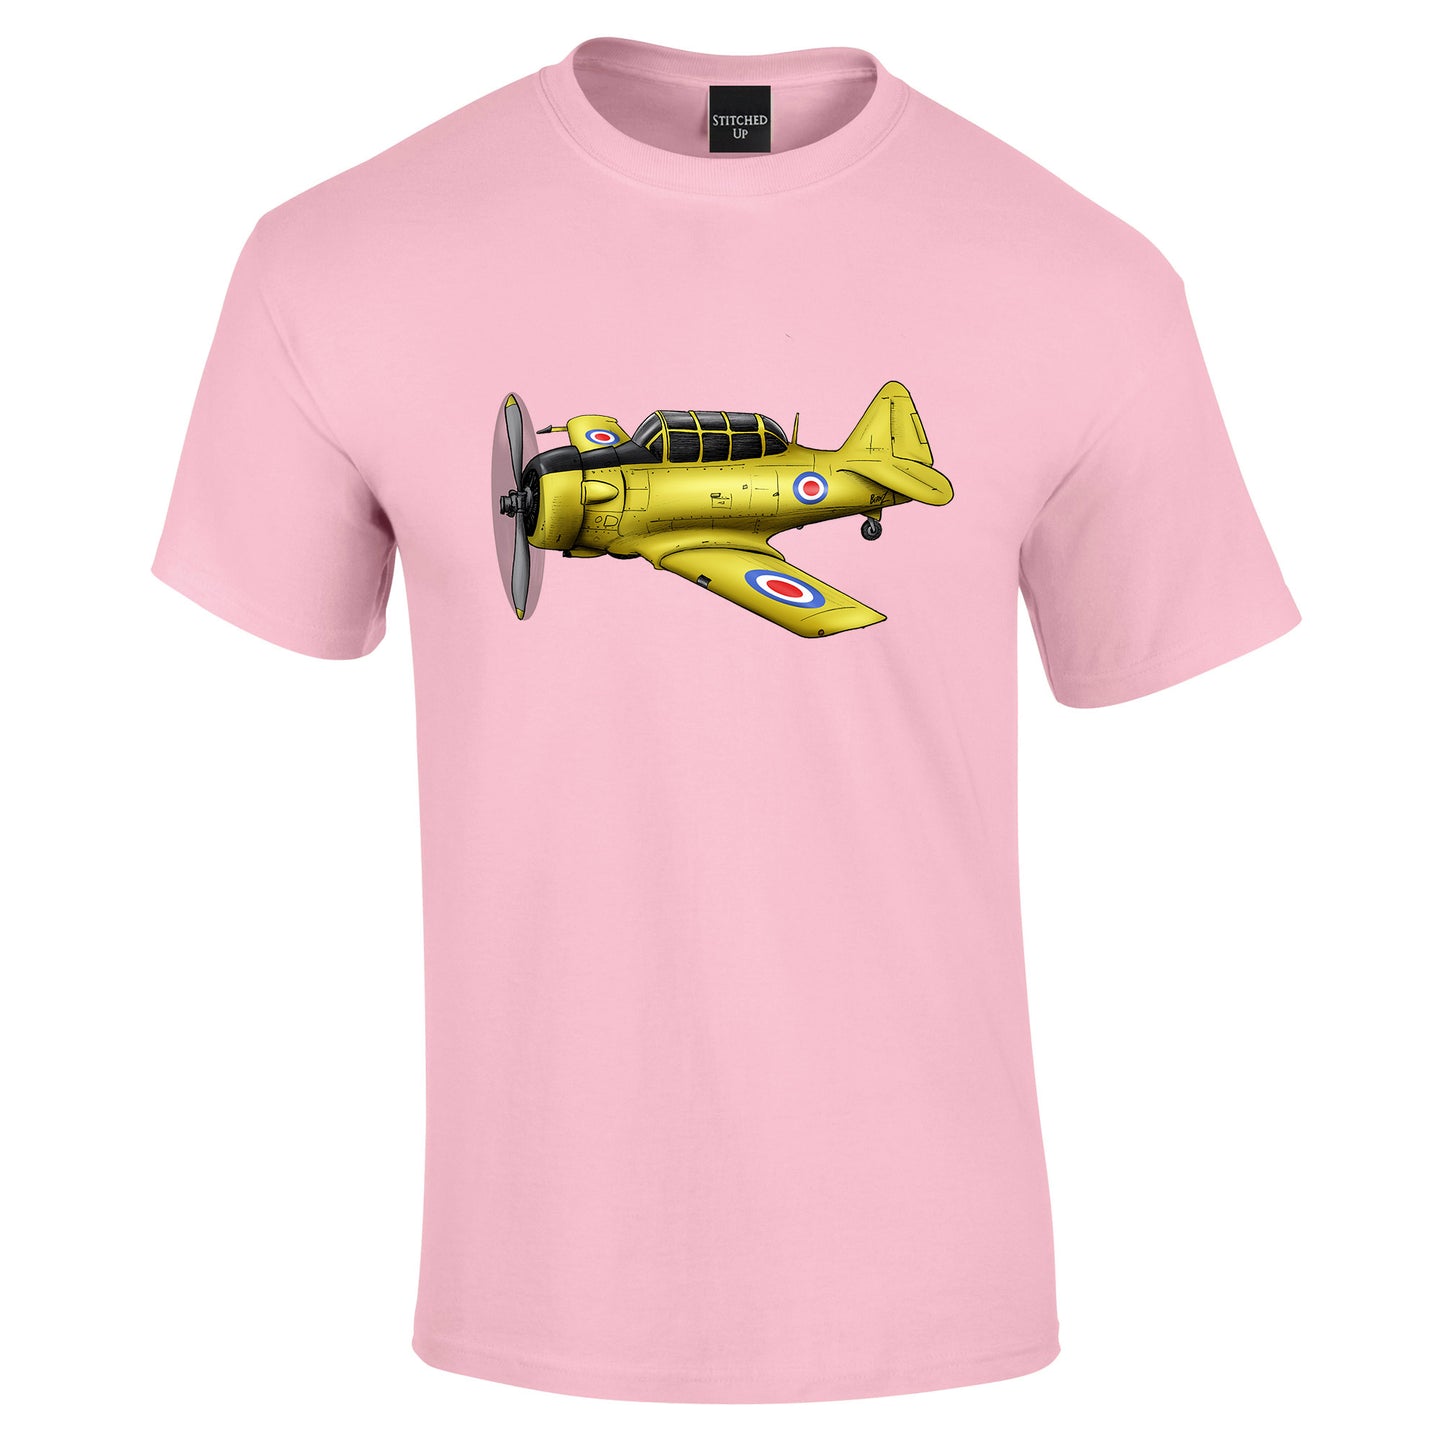 Harvard Aircraft T-Shirt